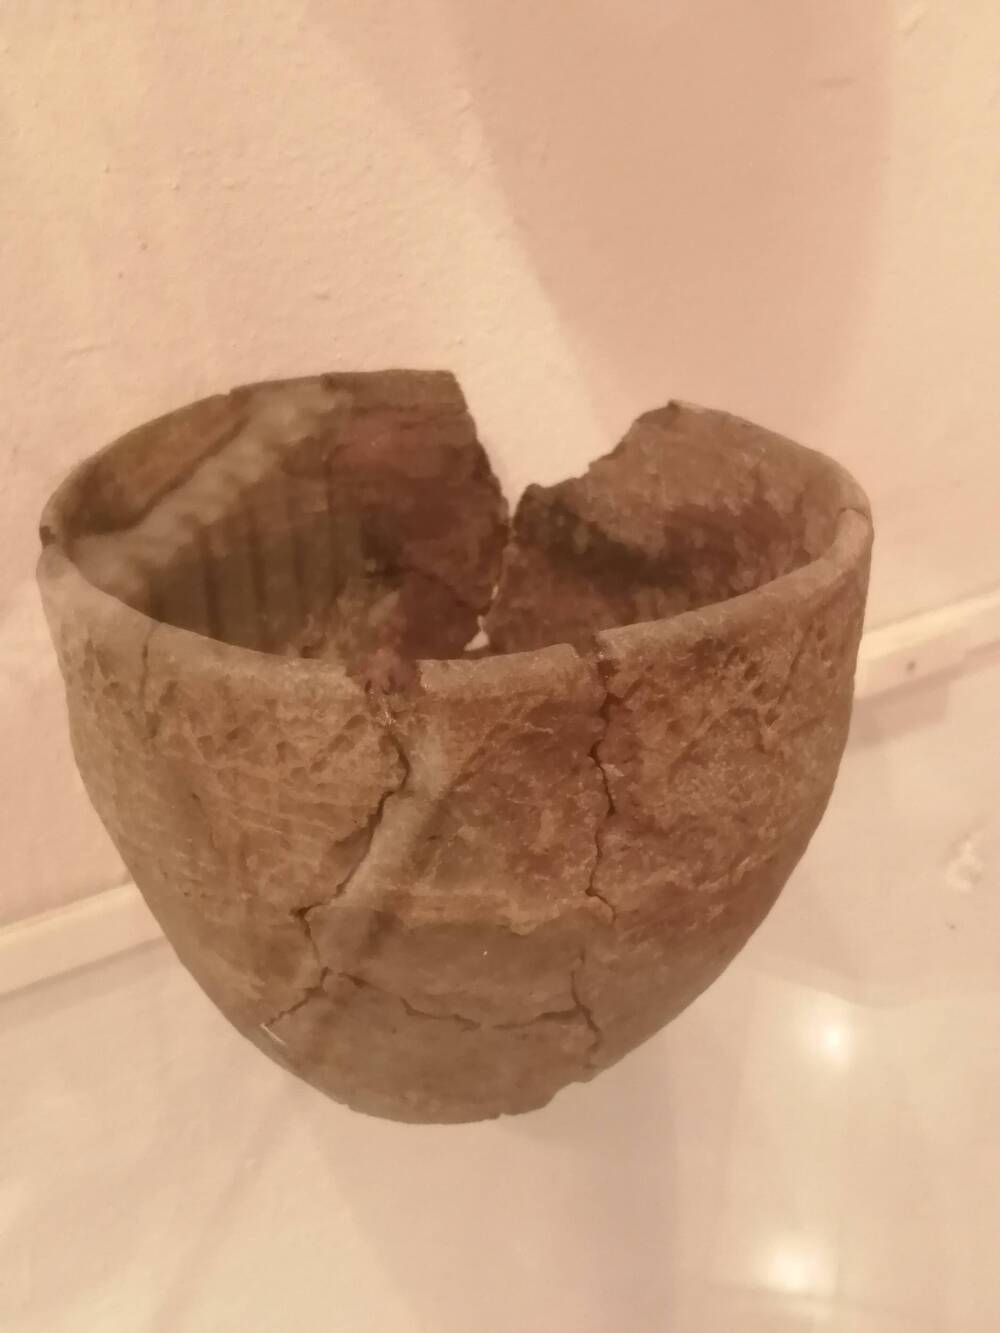 Горшок глиняной ручной лепки с отогнутой шейкой. Орнаментирован.